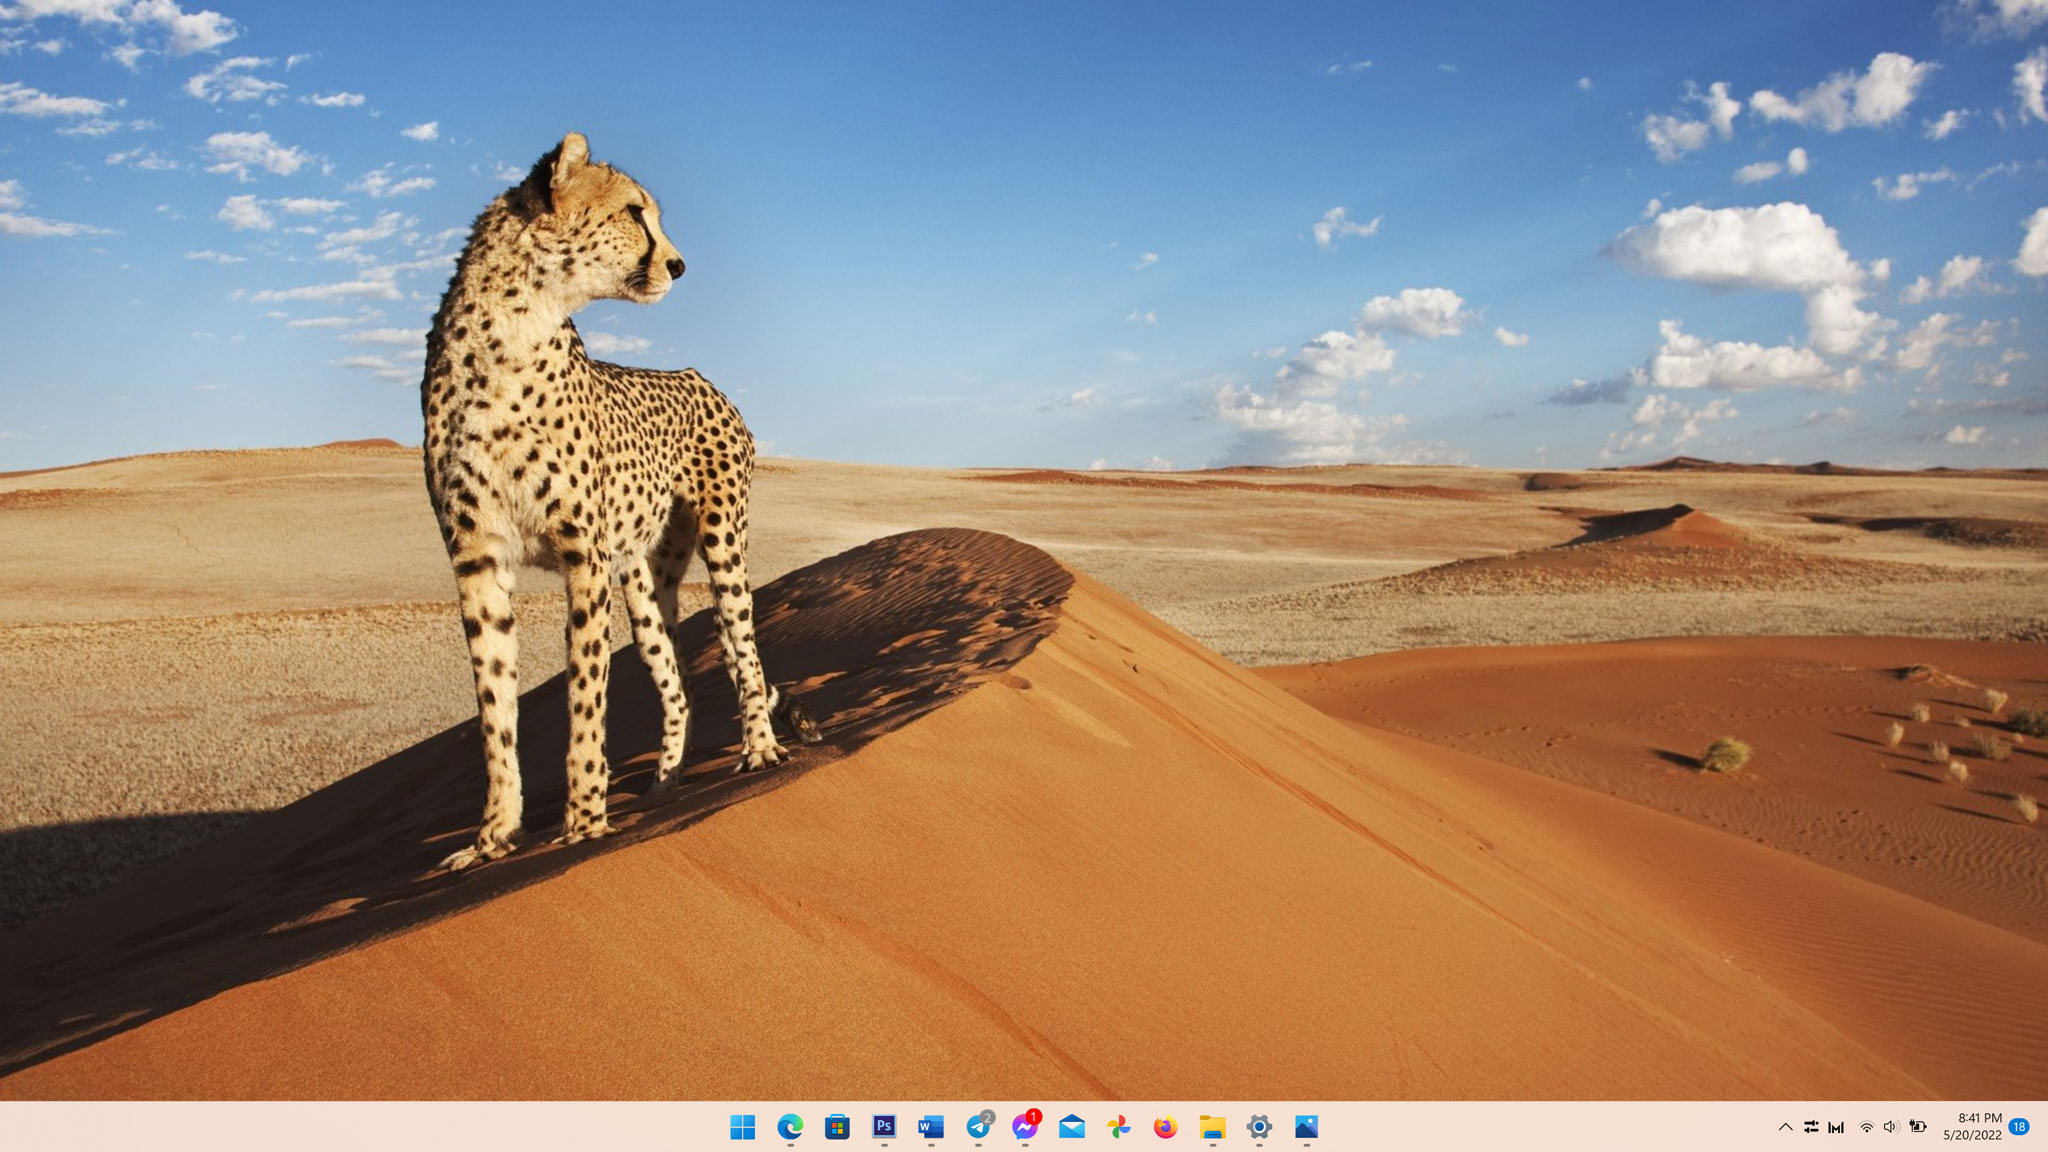 Windows 11 đổi hình nền desktop tự động giúp bạn tiết kiệm thời gian và không gian để tìm kiếm hình nền. Chỉ với một vài thao tác đơn giản, bạn đã có thể có ngay những thiết kế hình nền đẹp và ấn tượng cho desktop của mình.